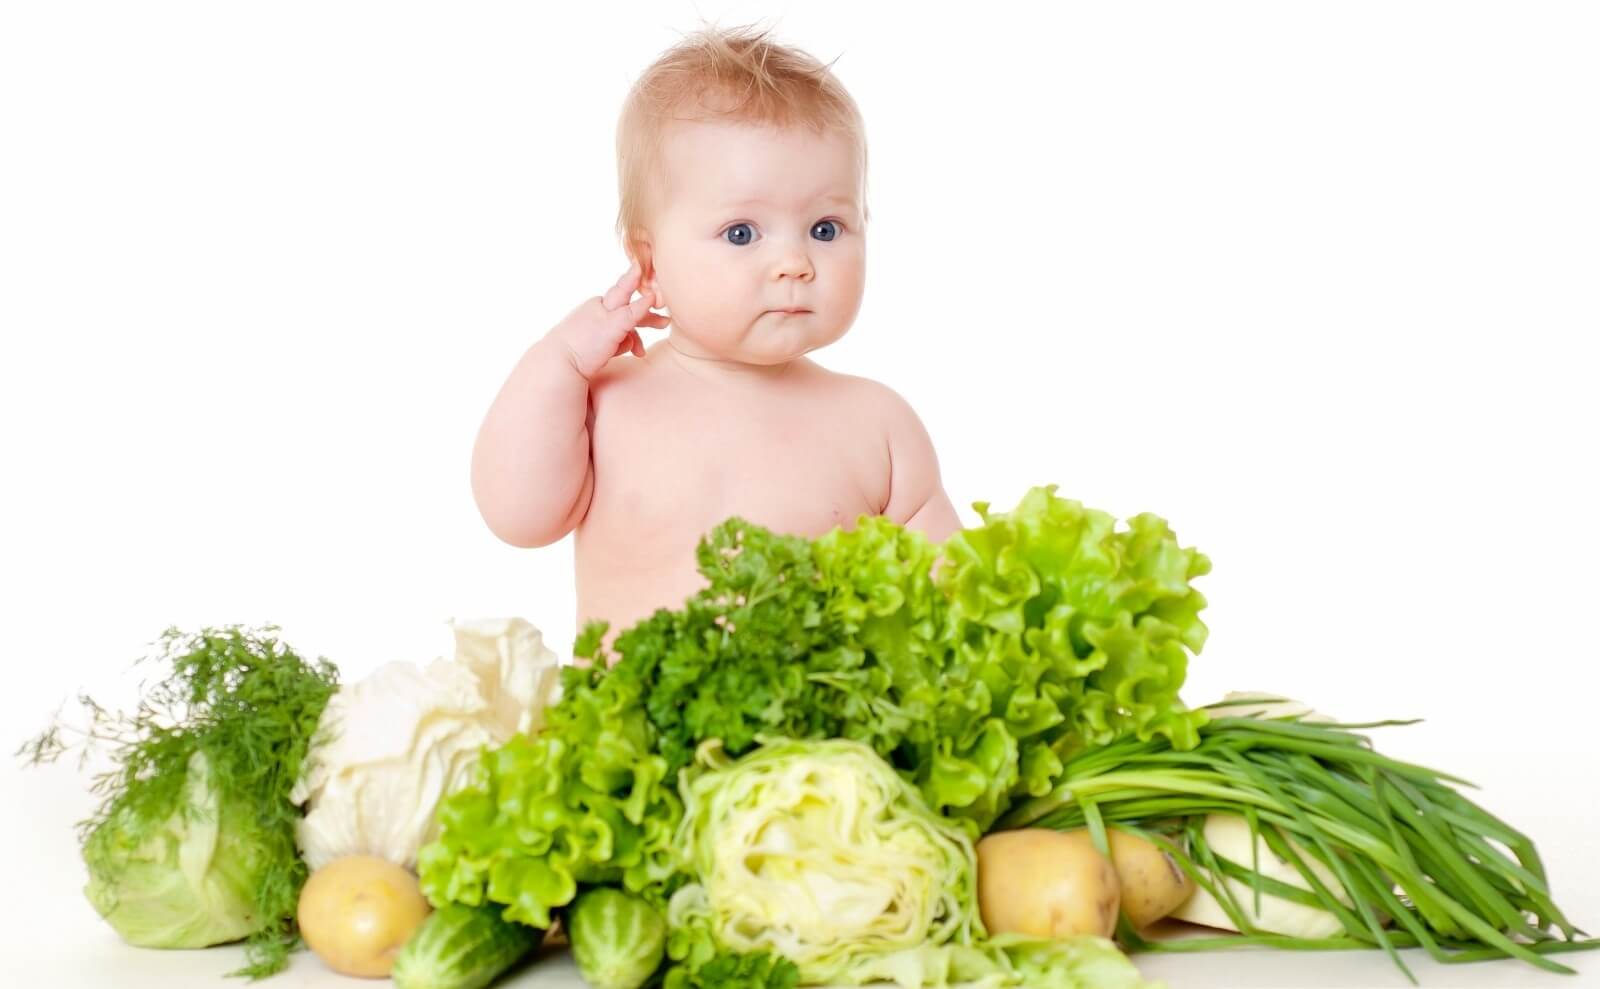 Cha mẹ nên xây dựng chế độ ăn uống hợp lý để phòng chống tình trạng béo phì ở trẻ em